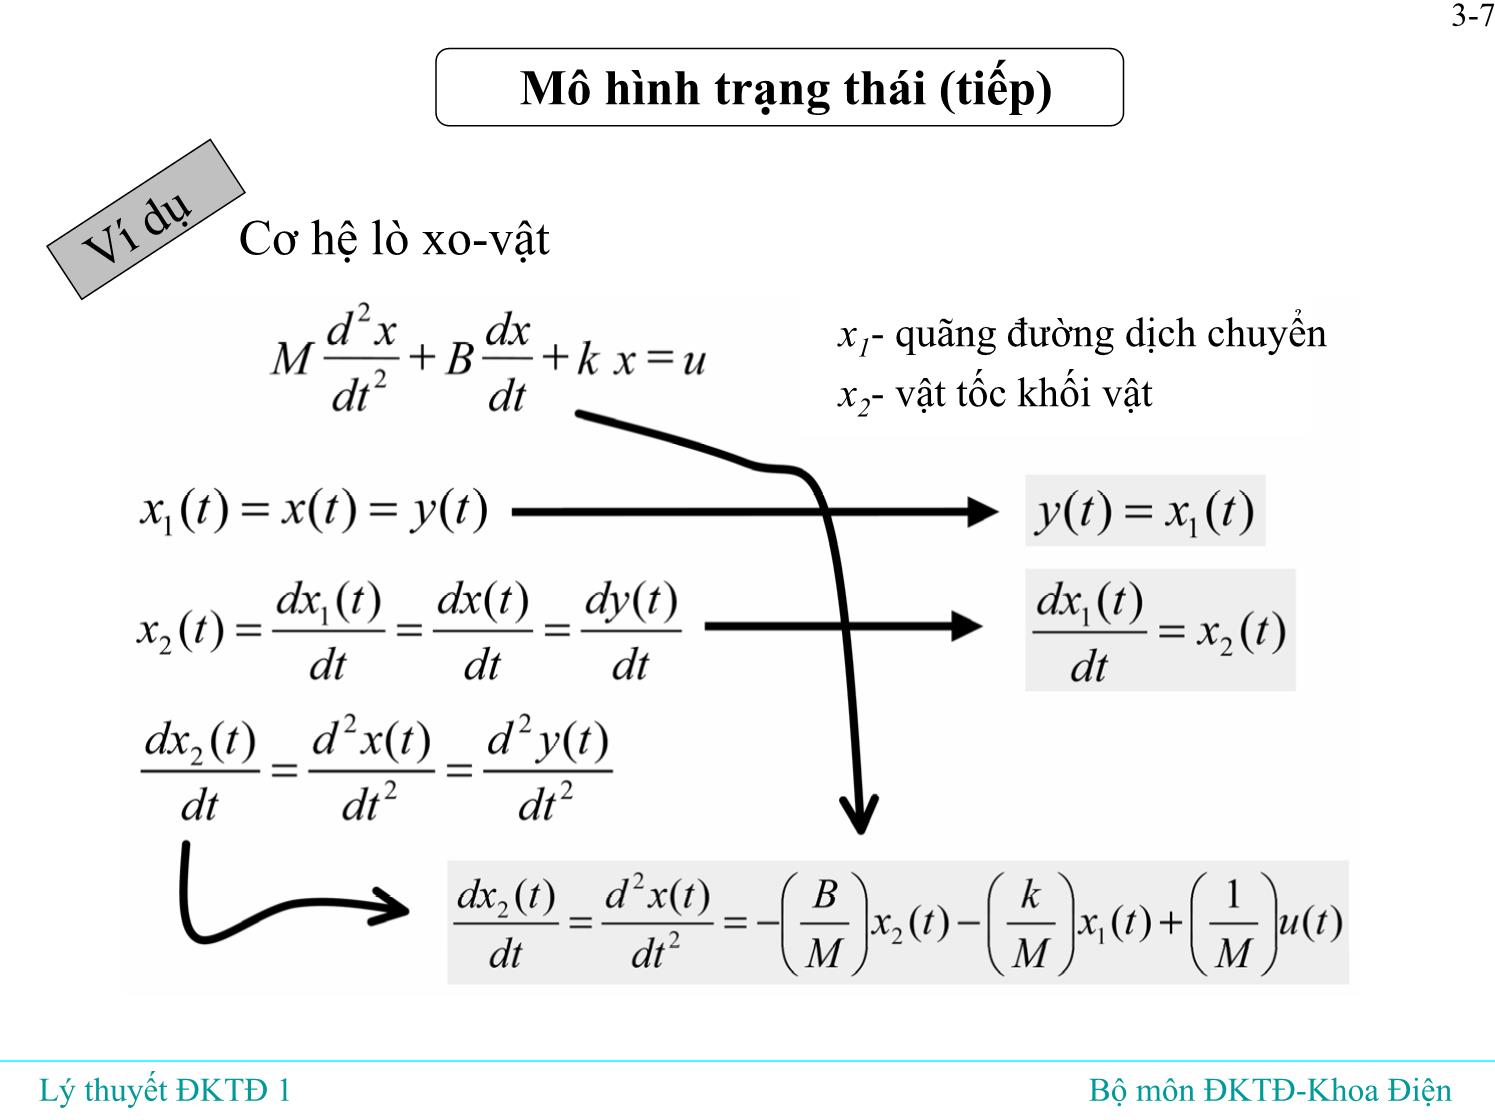 Bài giảng Lý thuyết điều khiển tự động - Bài 3: Mô hình toán học của hệ liên tục tuyến tín - Đỗ Tú Anh trang 8